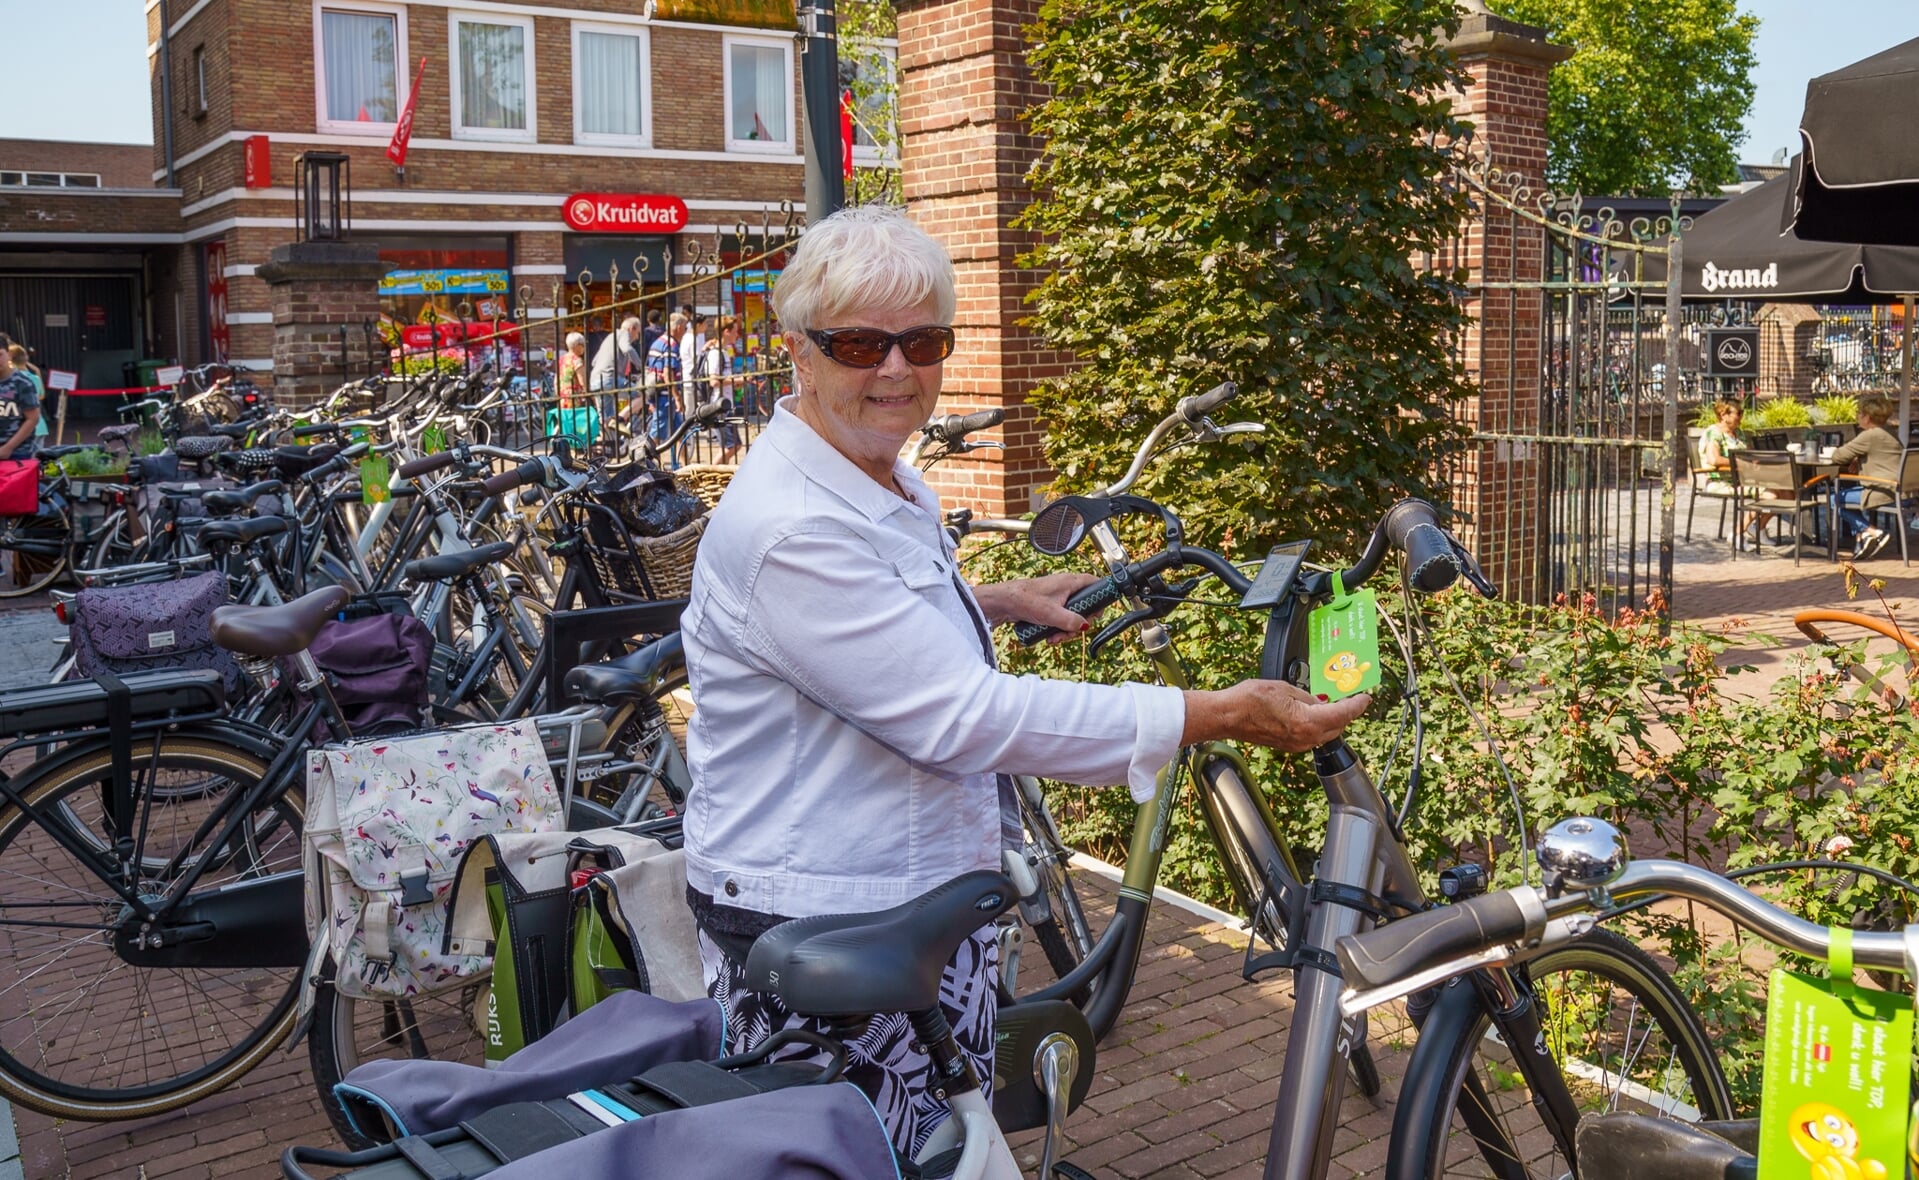 Deze vrouw vond vorig jaar een groen label aan haar fietsstuur. Haar rijwiel stond op een plek die daarvoor bedoeld is.